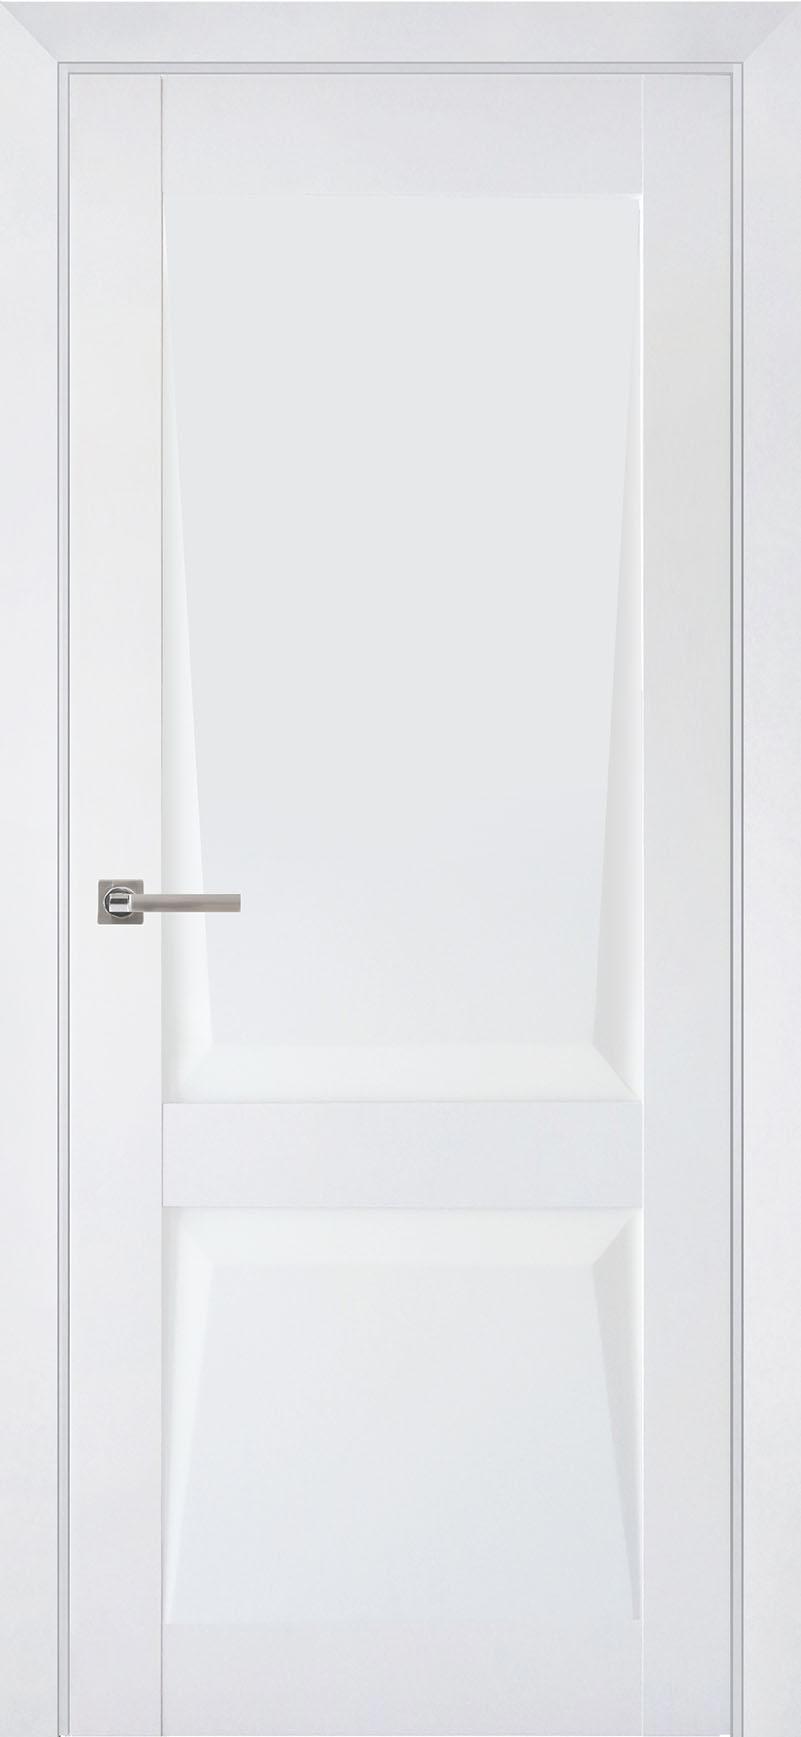 90903211 Межкомнатная дверь Перфекто 101 глухая без замка и петель в комплекте 200x90см белый STLM-0420037 UBERTURE